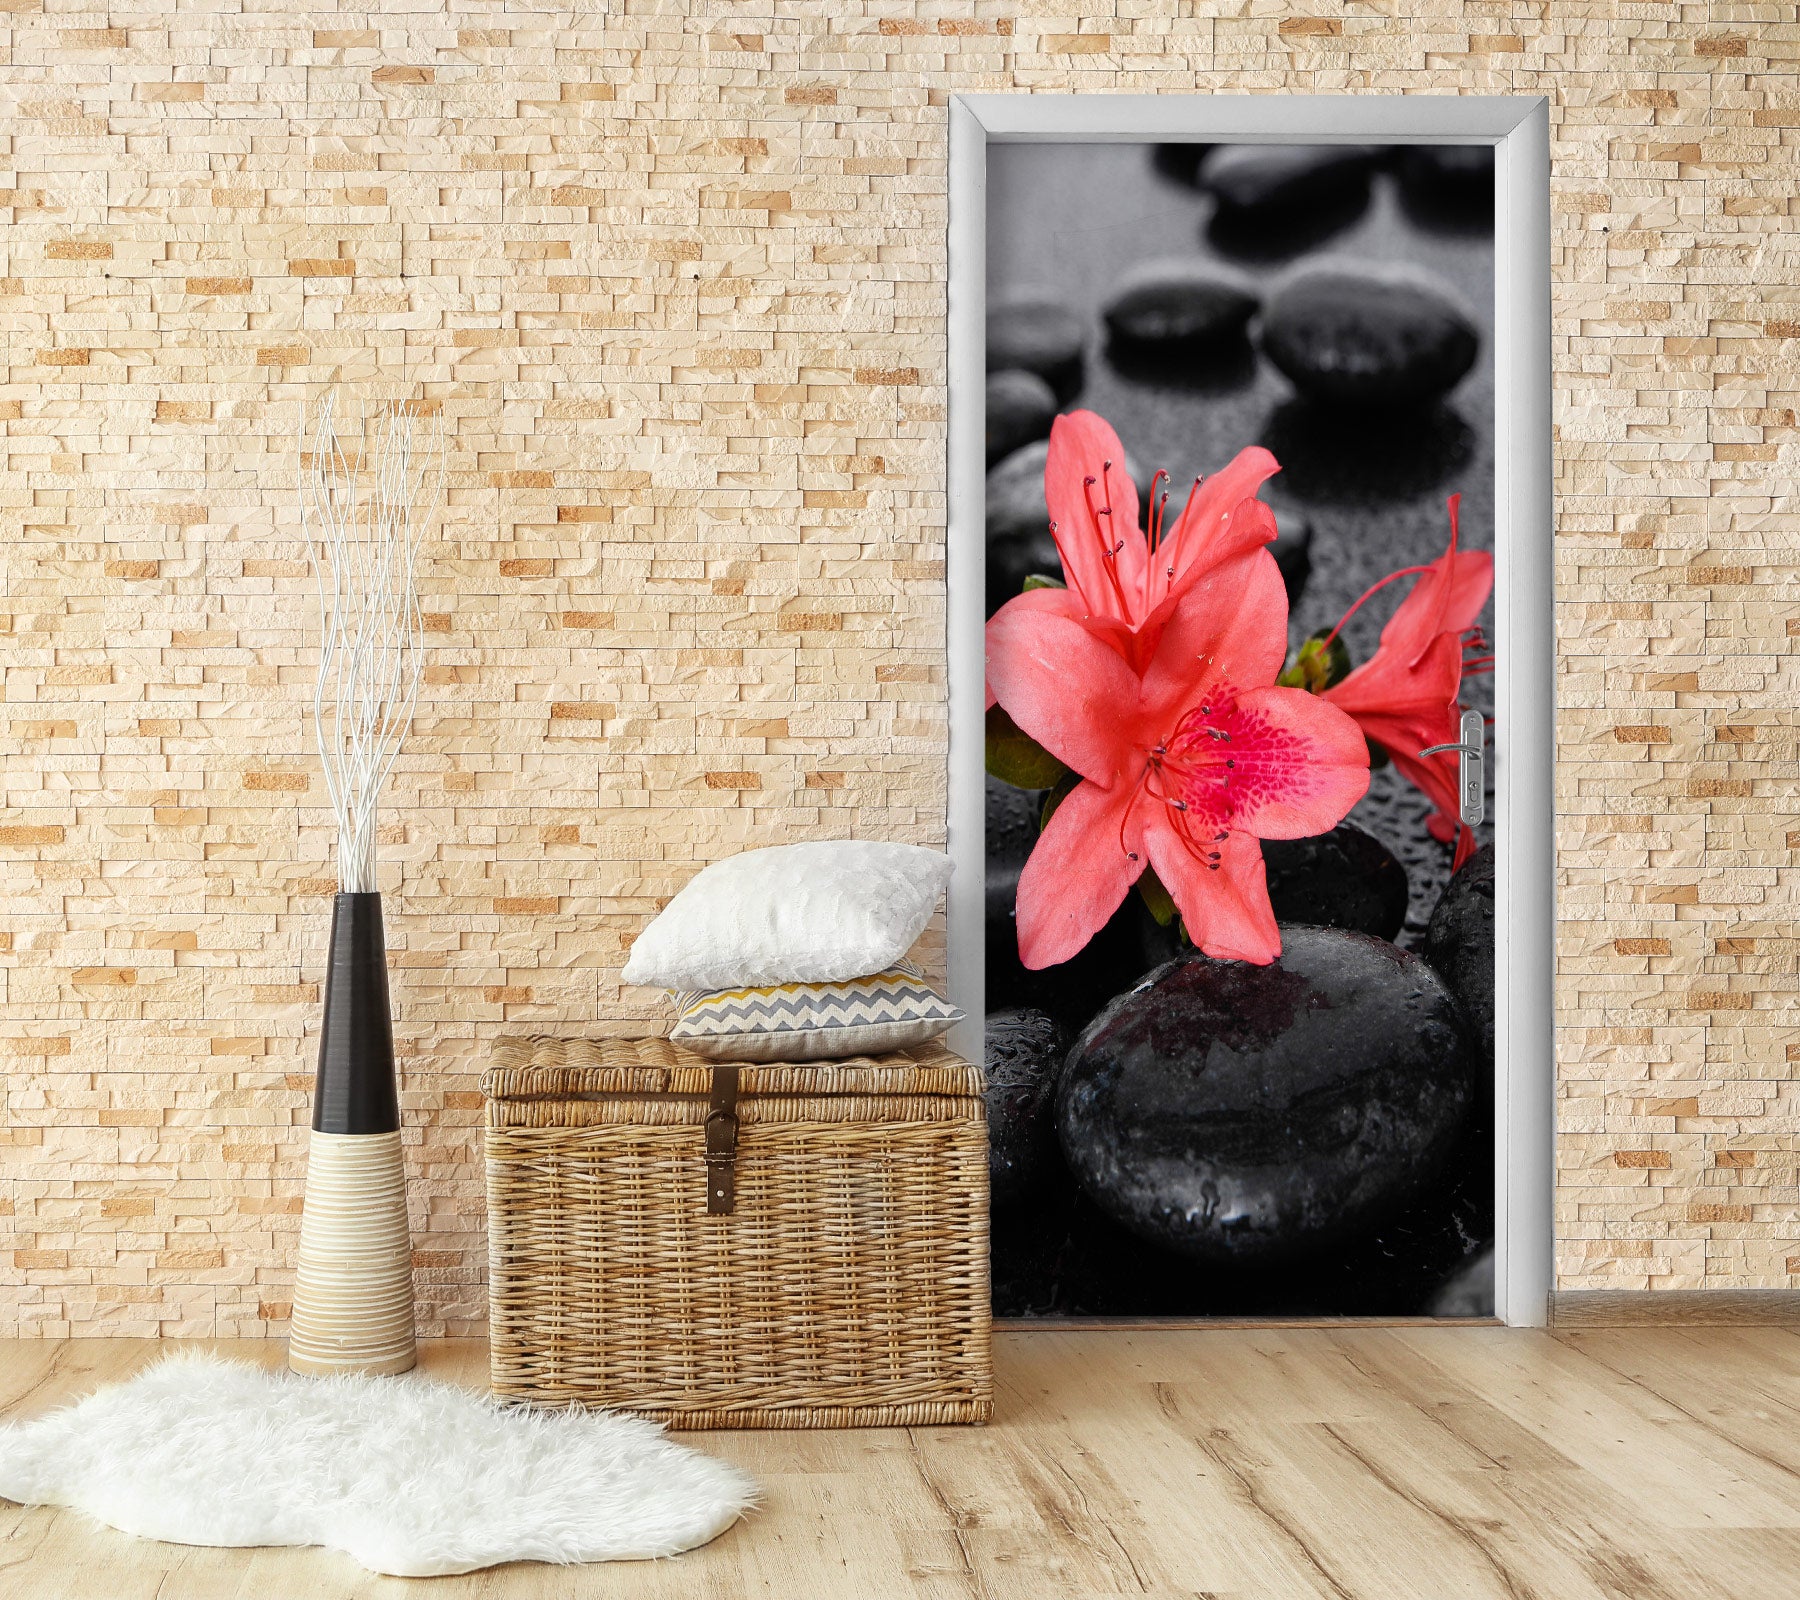 3D Black Stone Flower 001 Door Mural